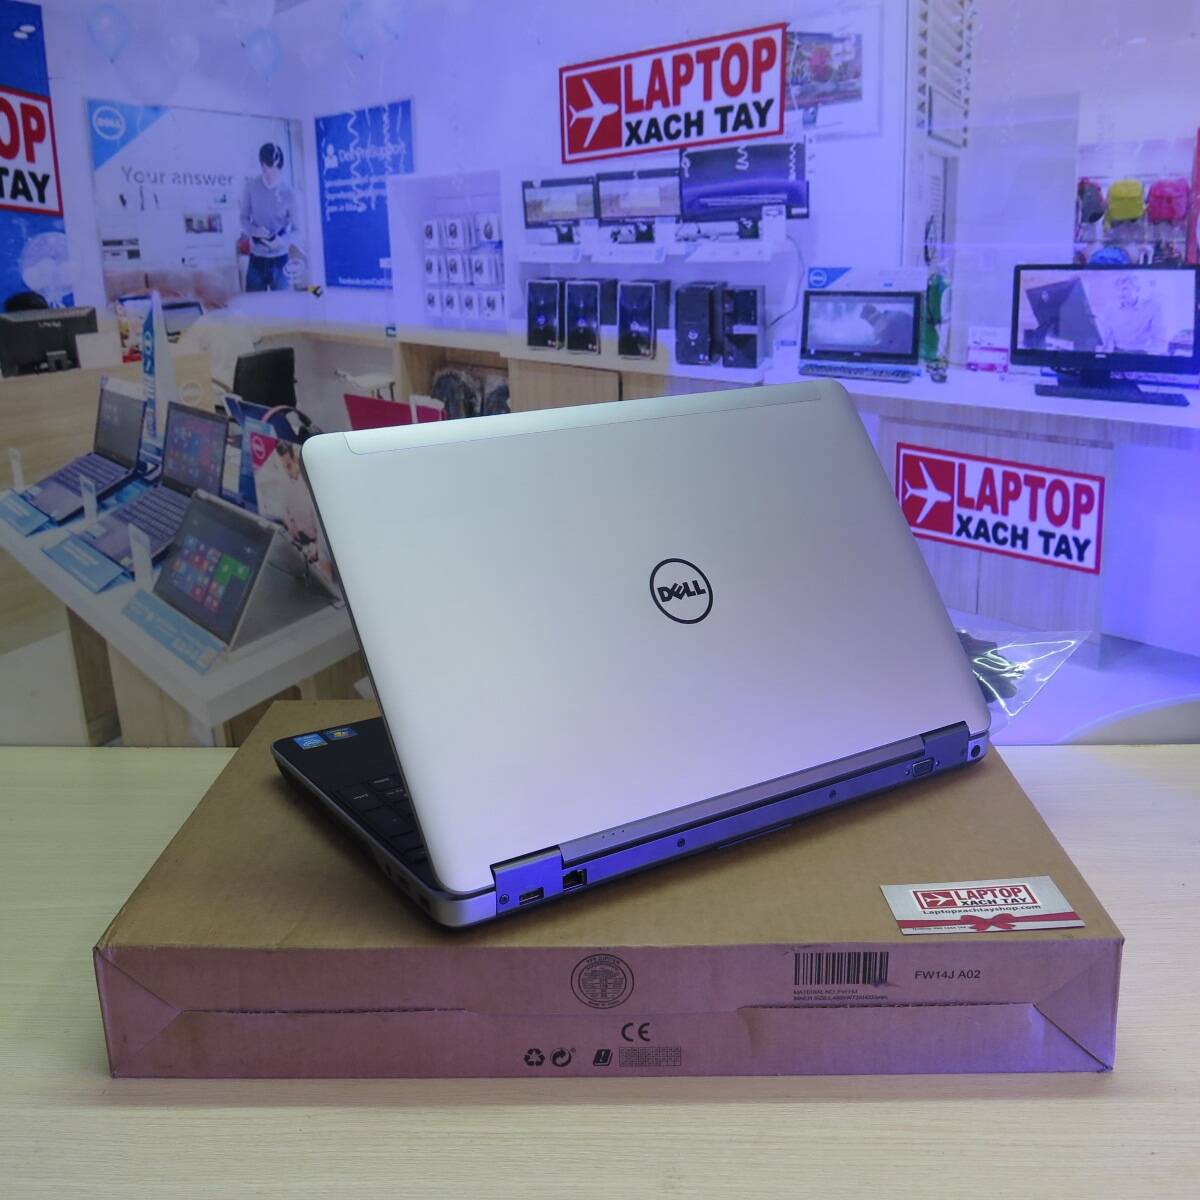 Dell Latitude E6540 I7 4800Mq Ram 8Gb Ssd 128Gb + Hdd 1Tb Fhd Amd Radeon Hd  8790M 2Gb - Laptop Xách Tay Shop